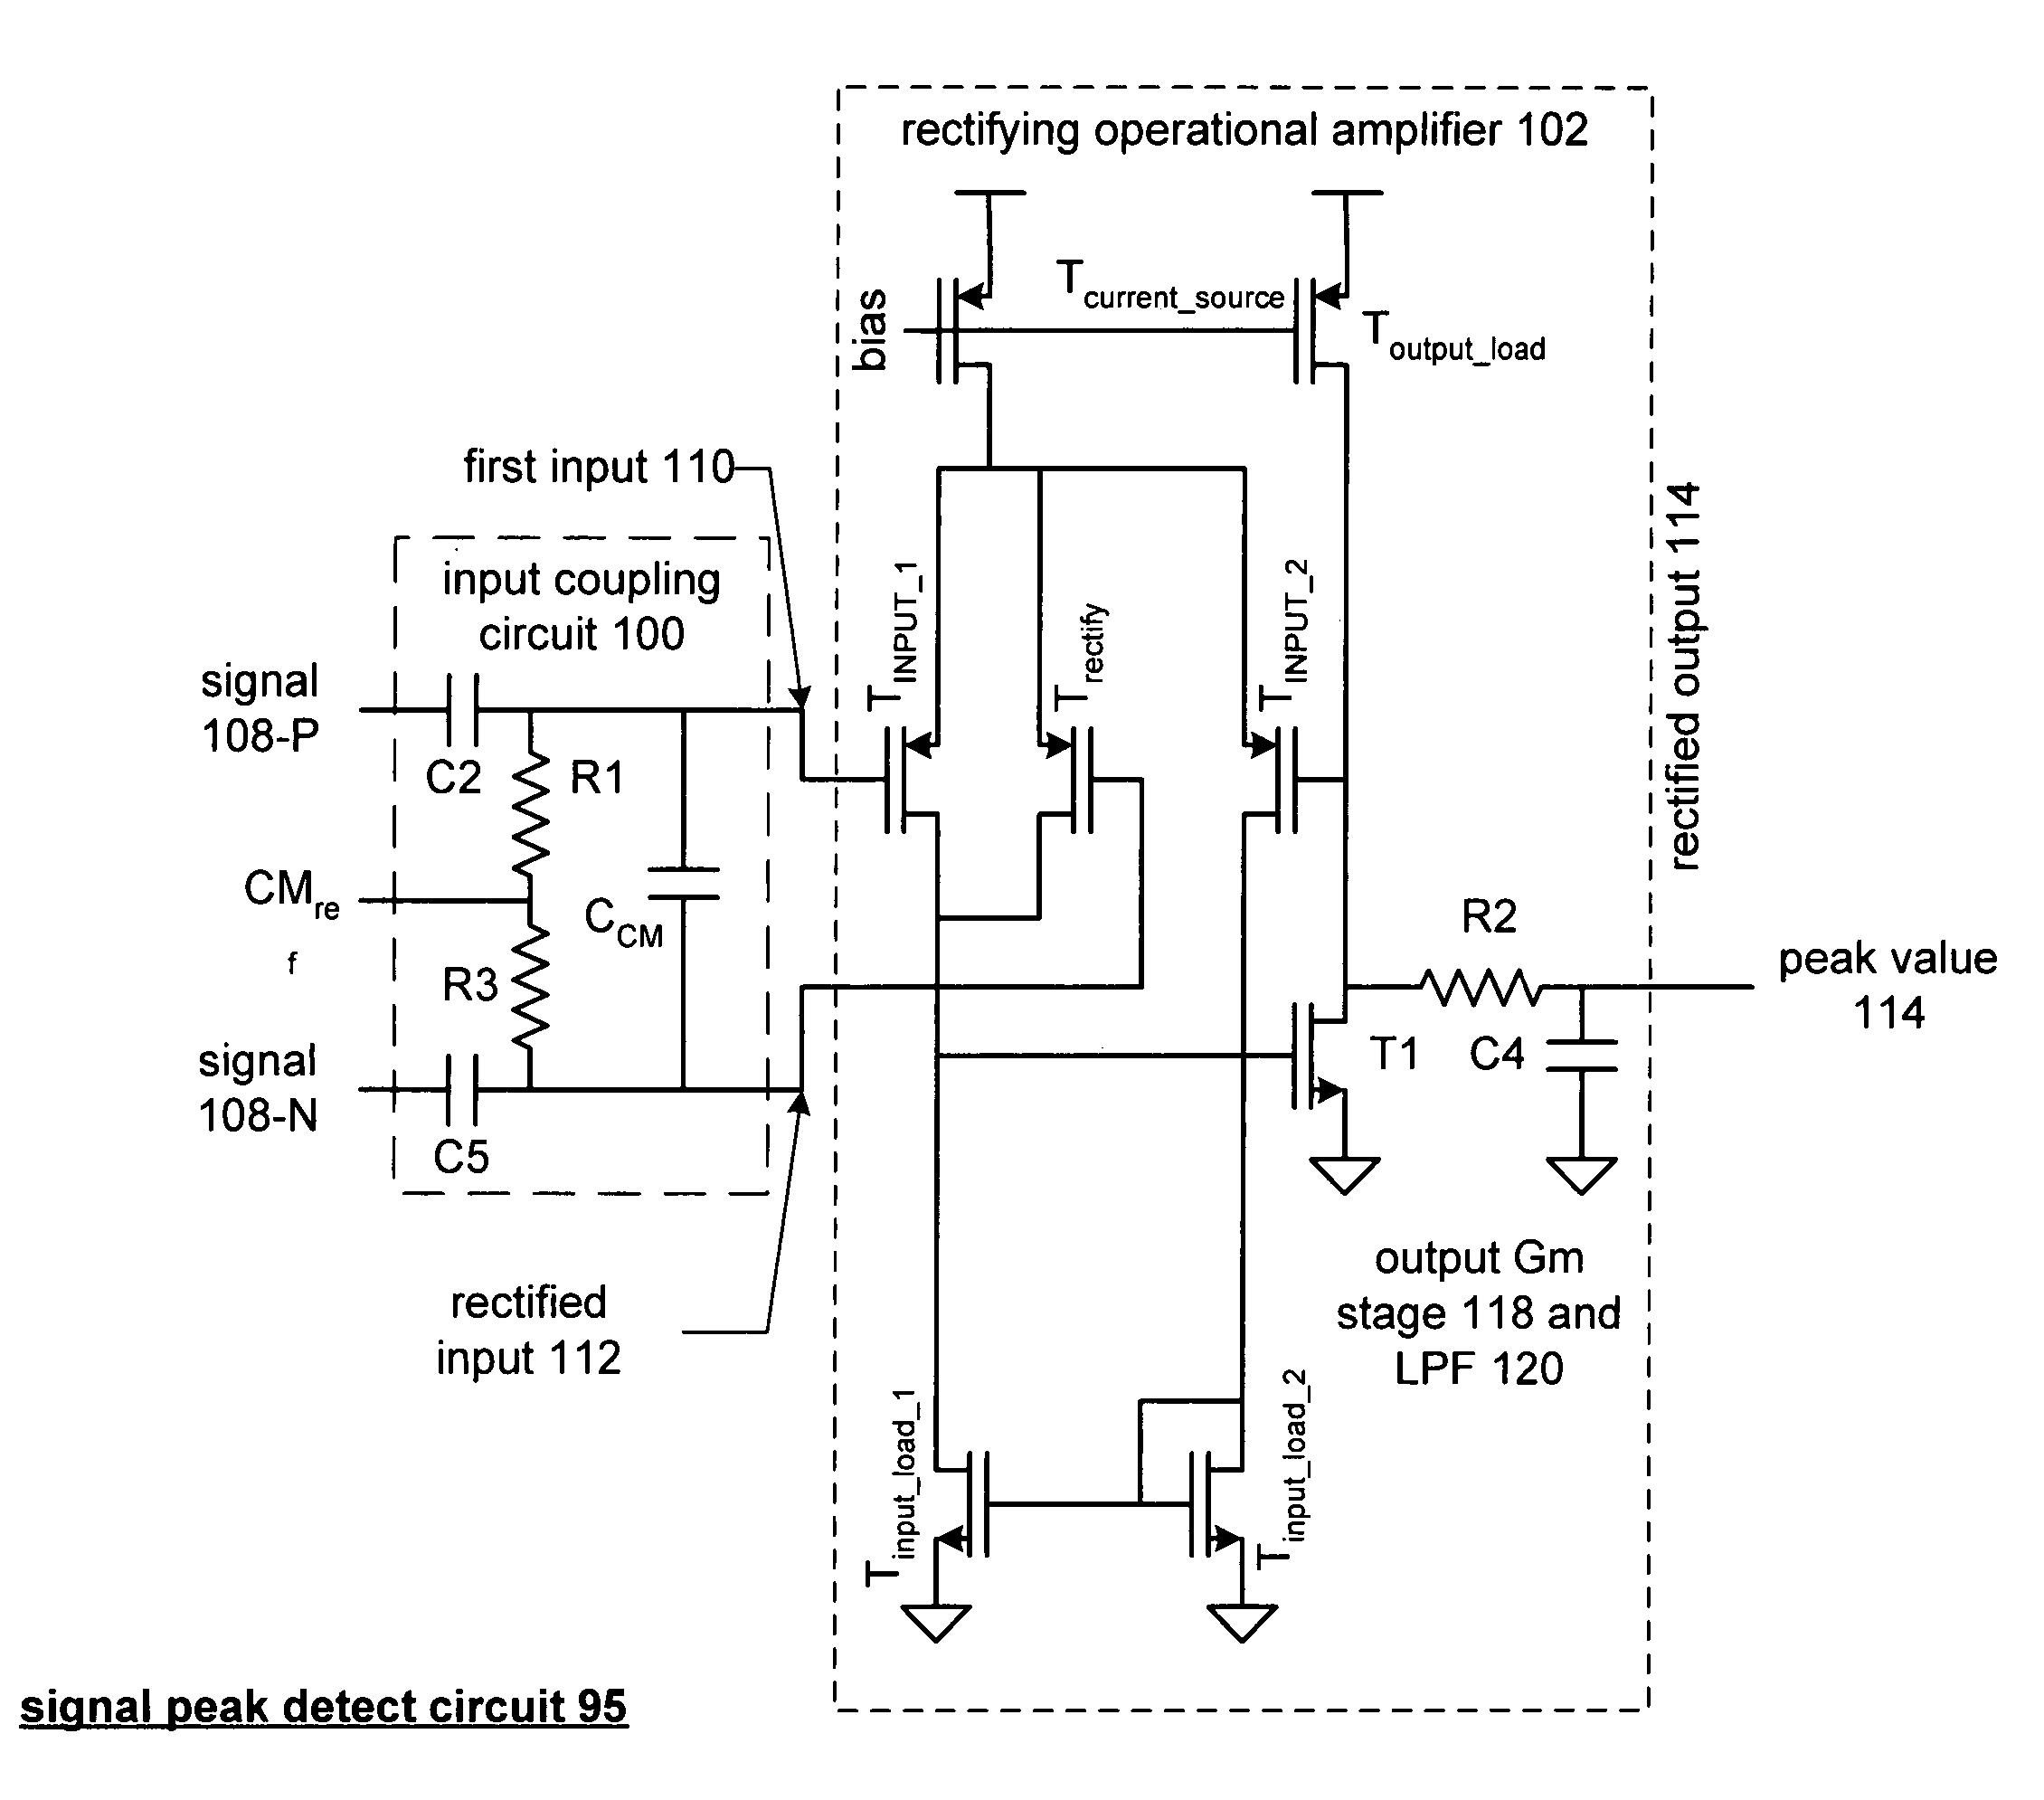 RF signal peak detector